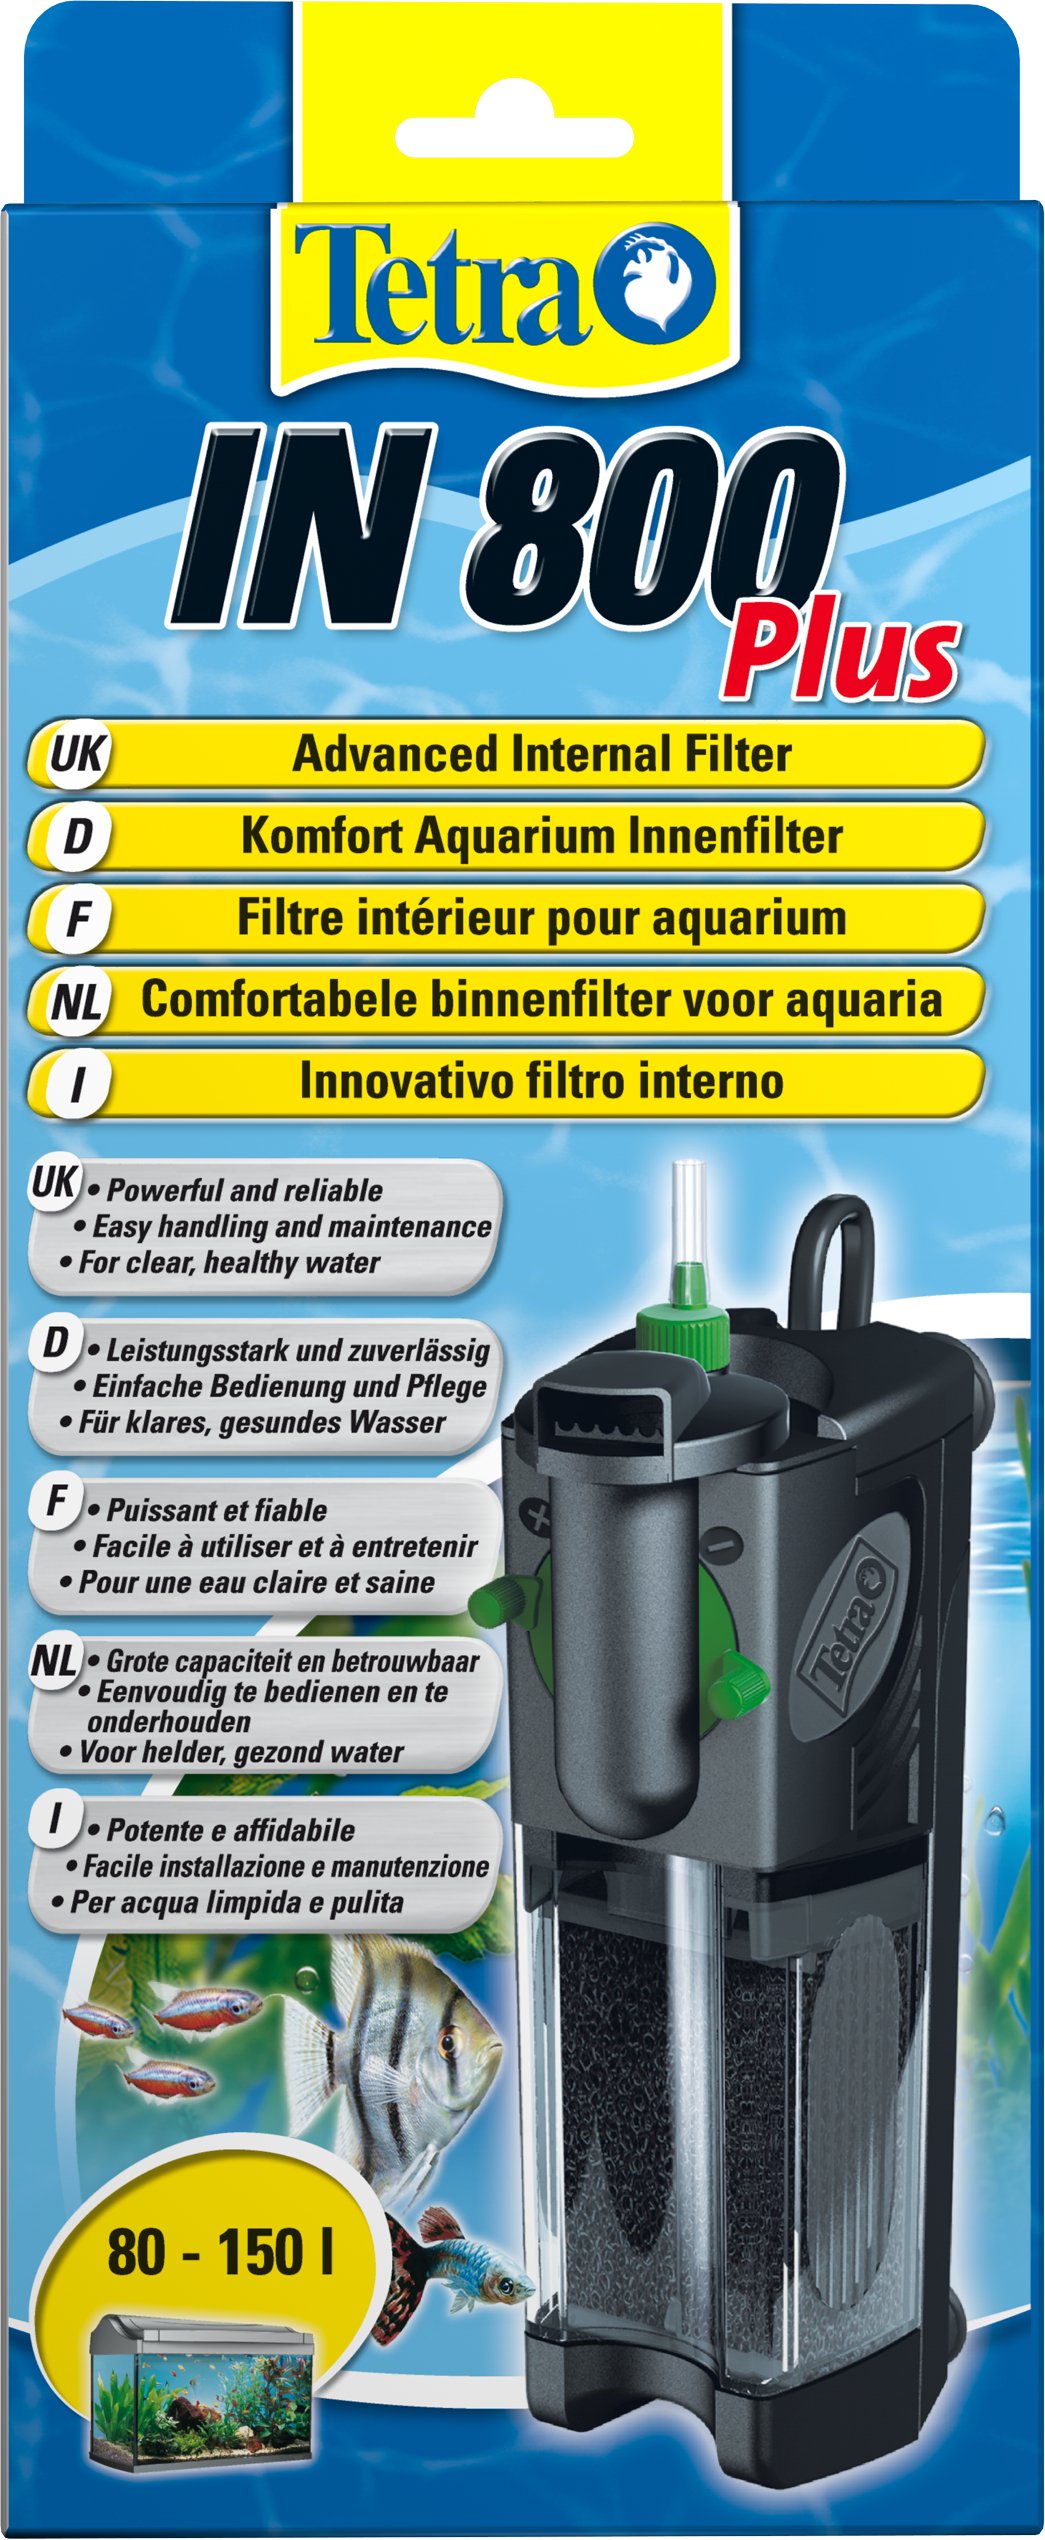 Tetra IN 800 plus Aquarium Innenfilter - Filter für klares und gesundes Wasser, mechanische, biologische und chemische Filterung, geeignet für Aquarien mit 80 - 150 Liter